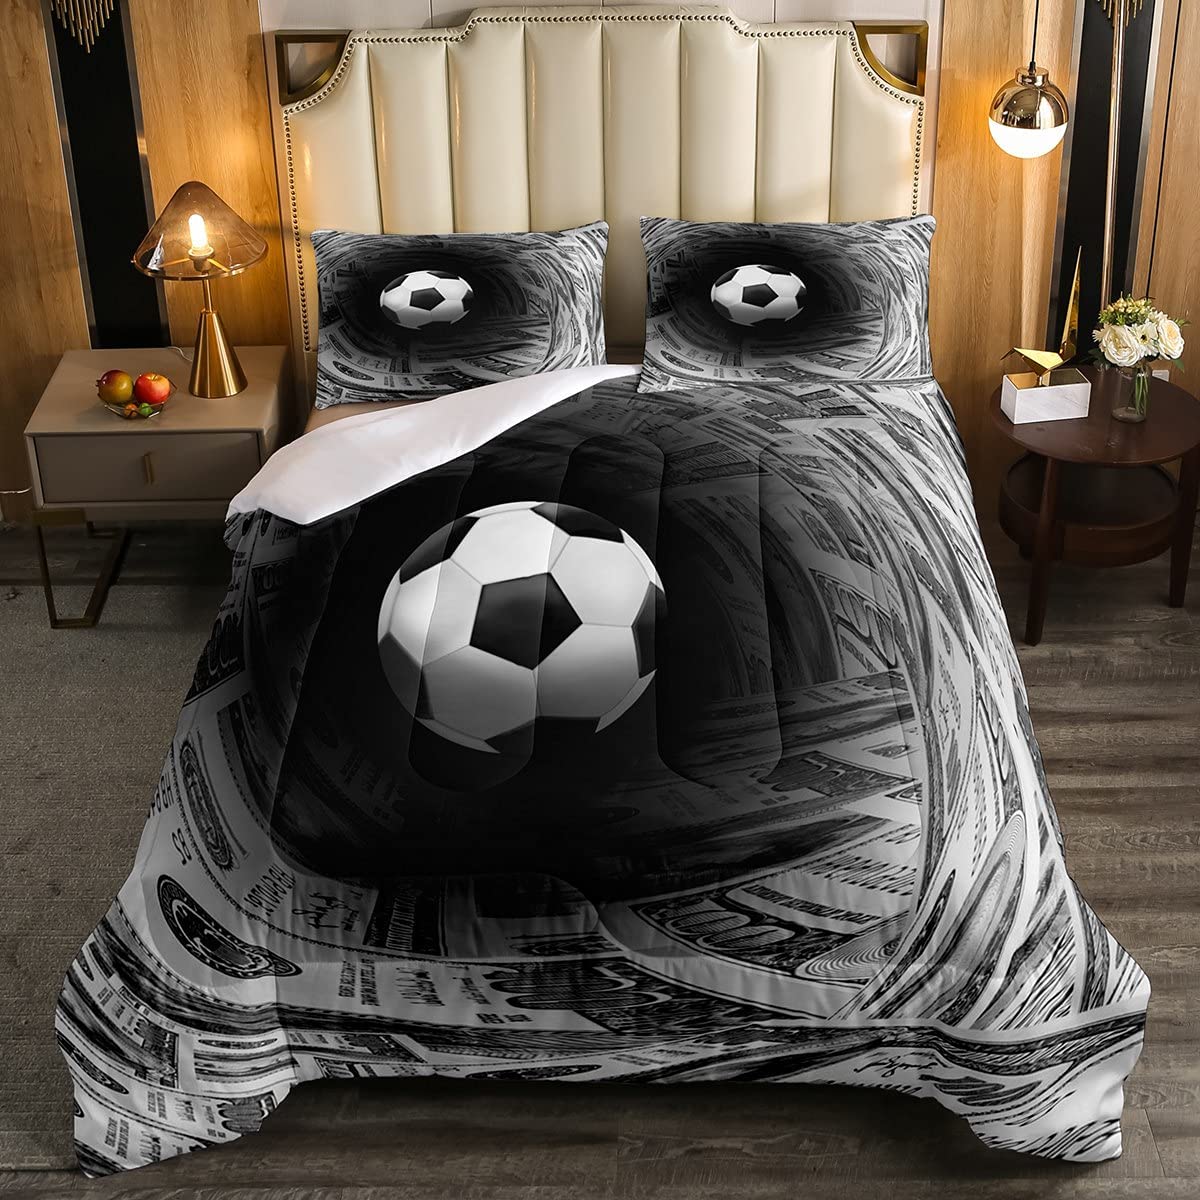 Evil Soccer Bed Blank Meme Template